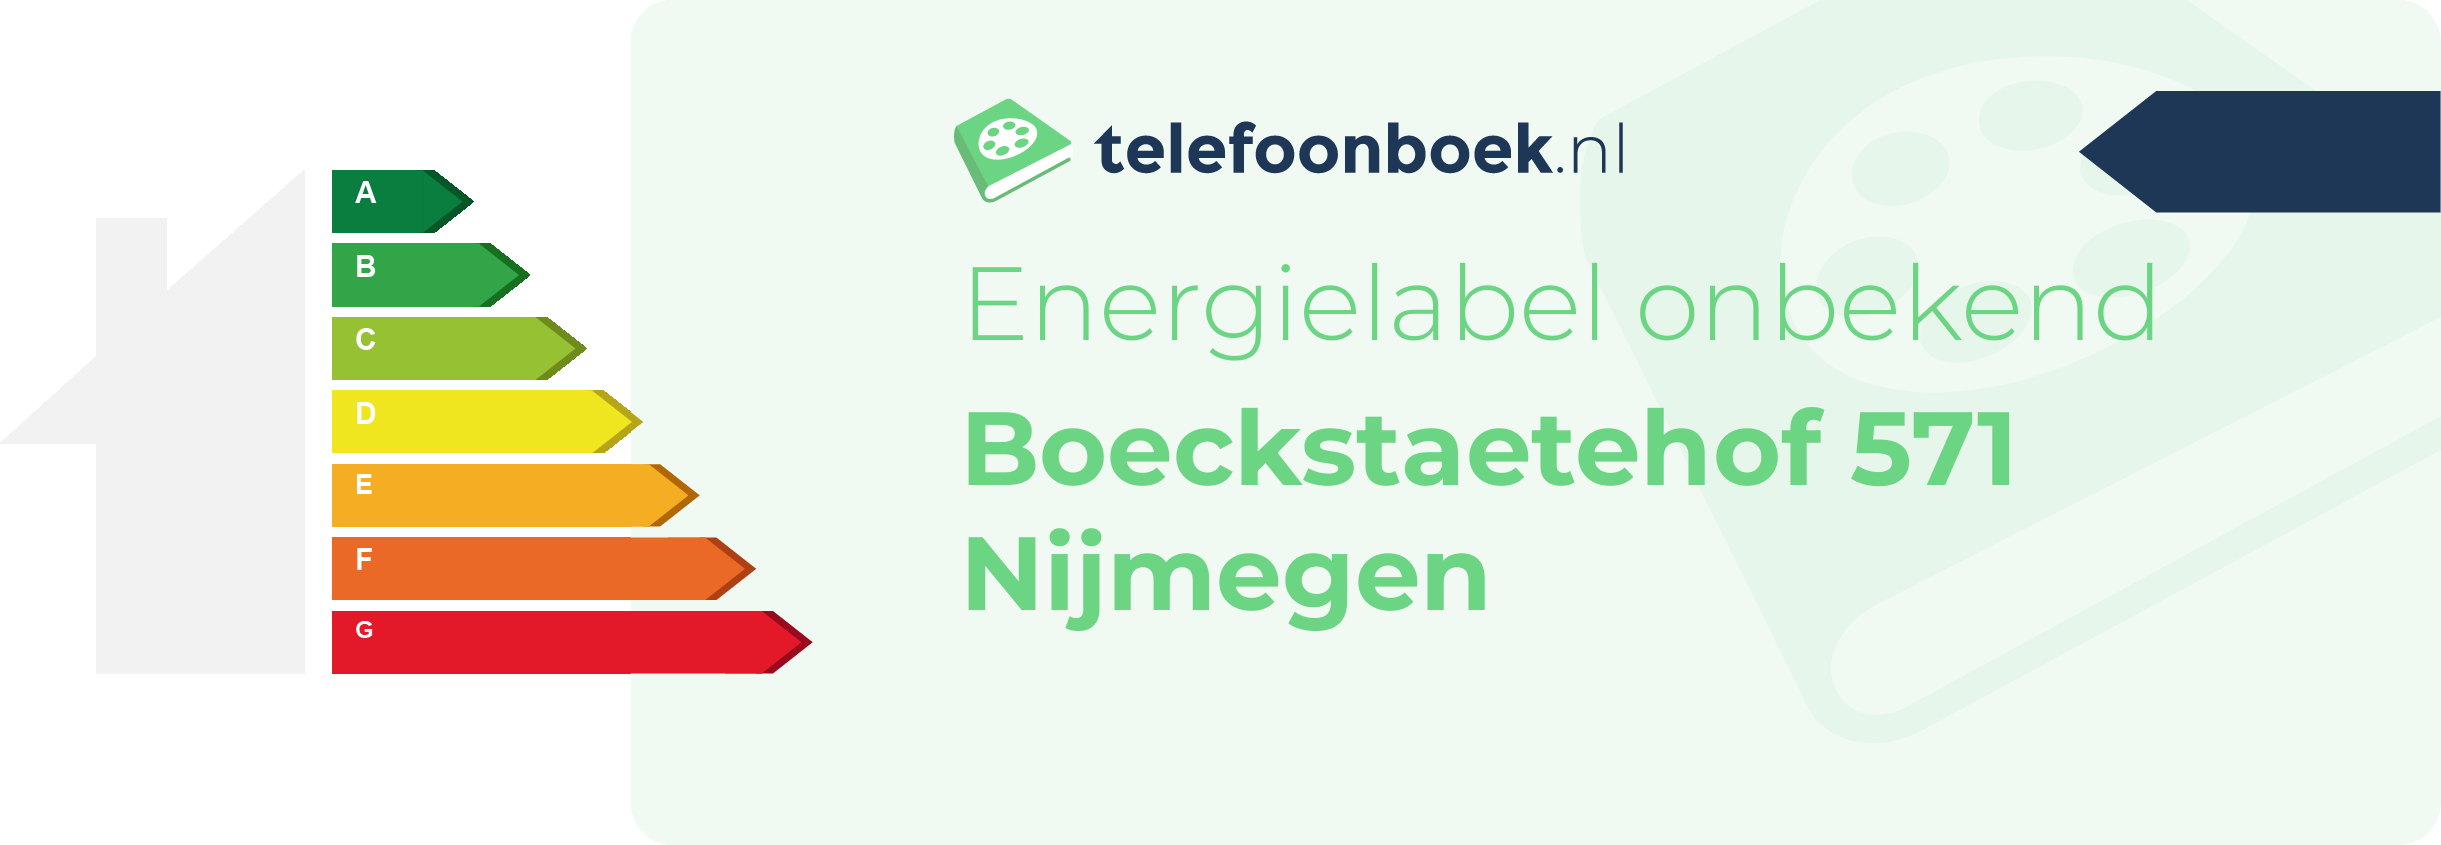 Energielabel Boeckstaetehof 571 Nijmegen